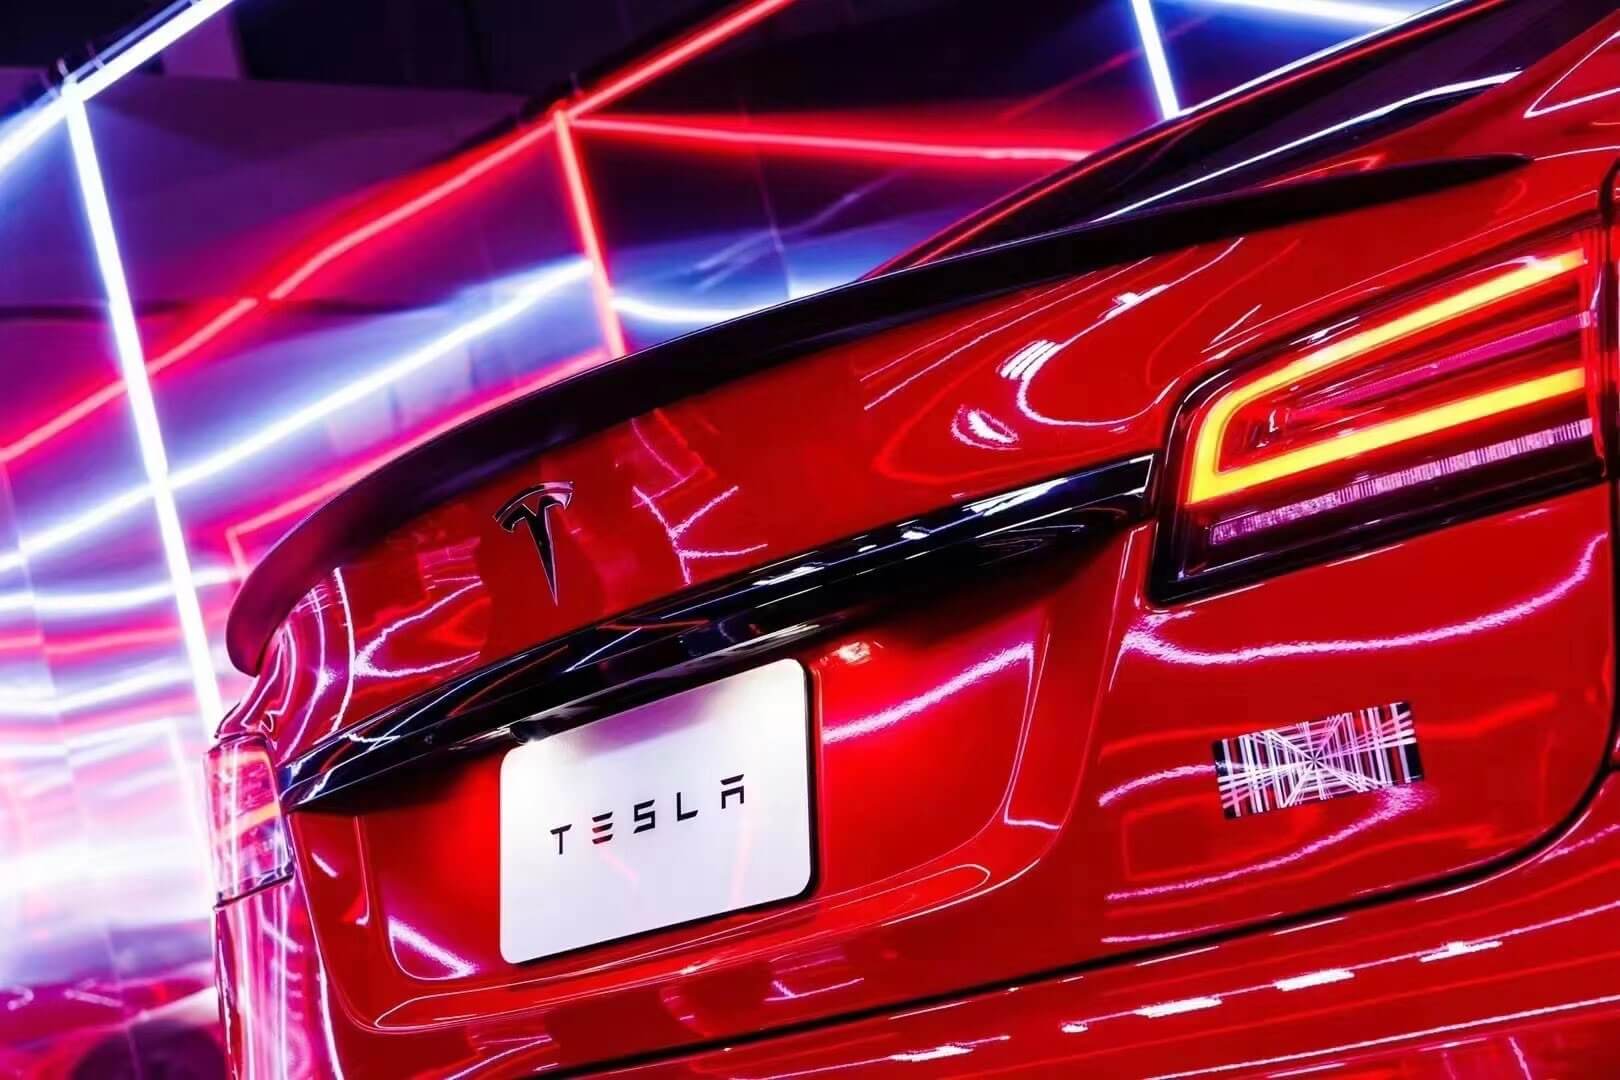 Tesla’s nieuwe klanten komen het vaakst van Toyota, Honda: studie